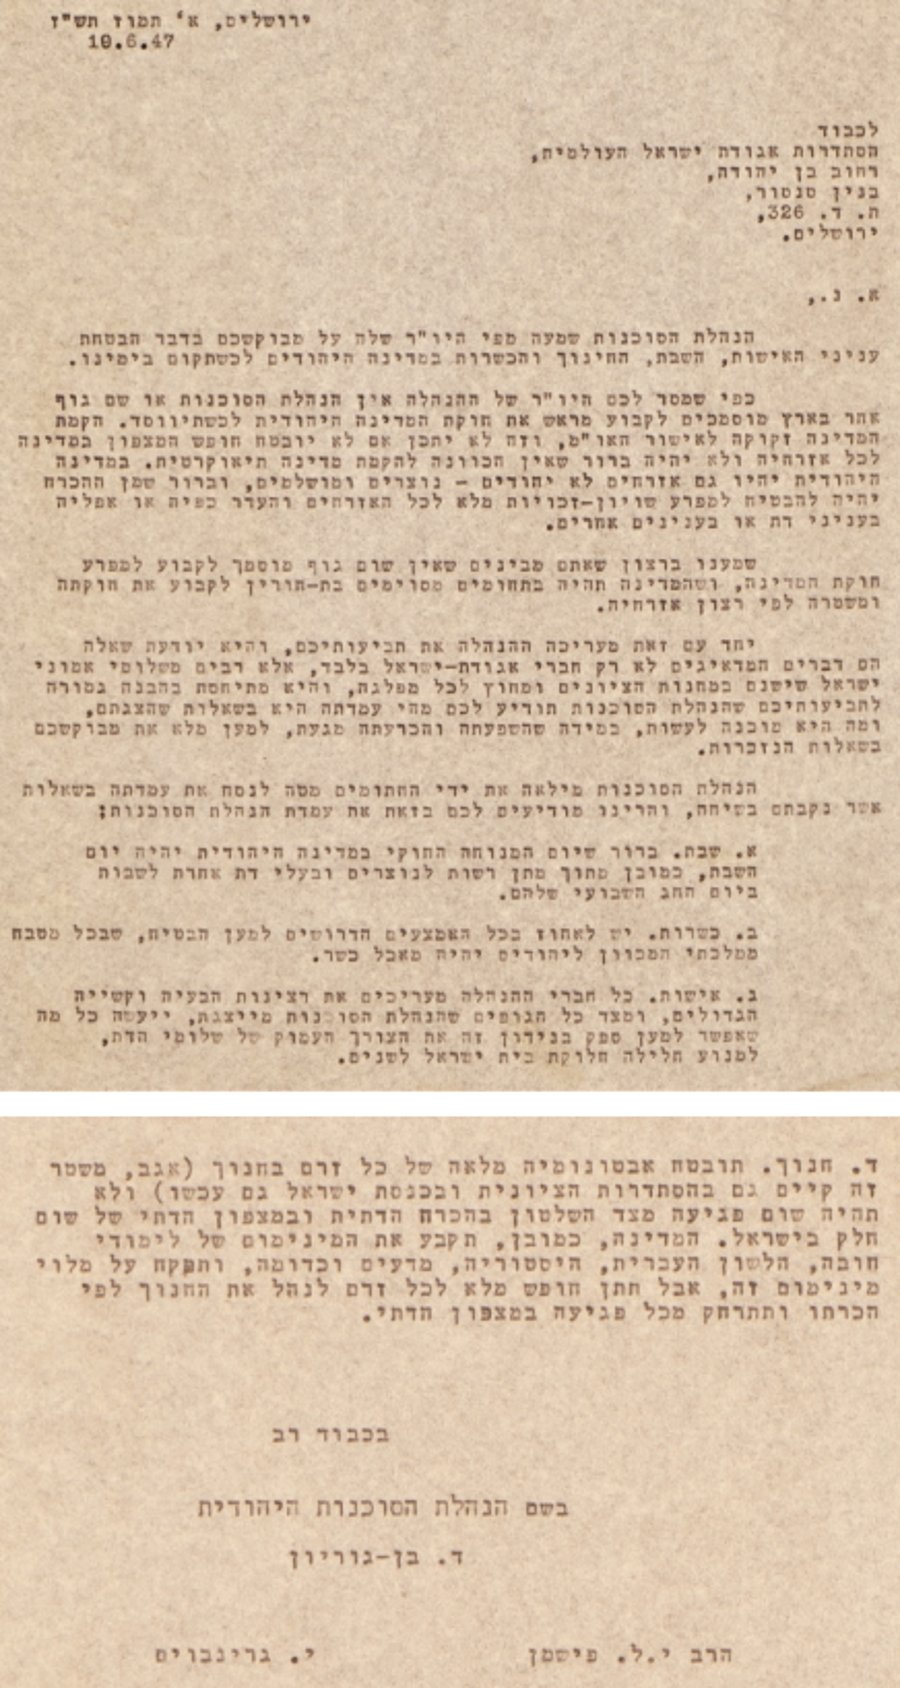 מסמך הסטטוס קוו המלא, כפי ששלח בן גוריון לאגודת ישראל